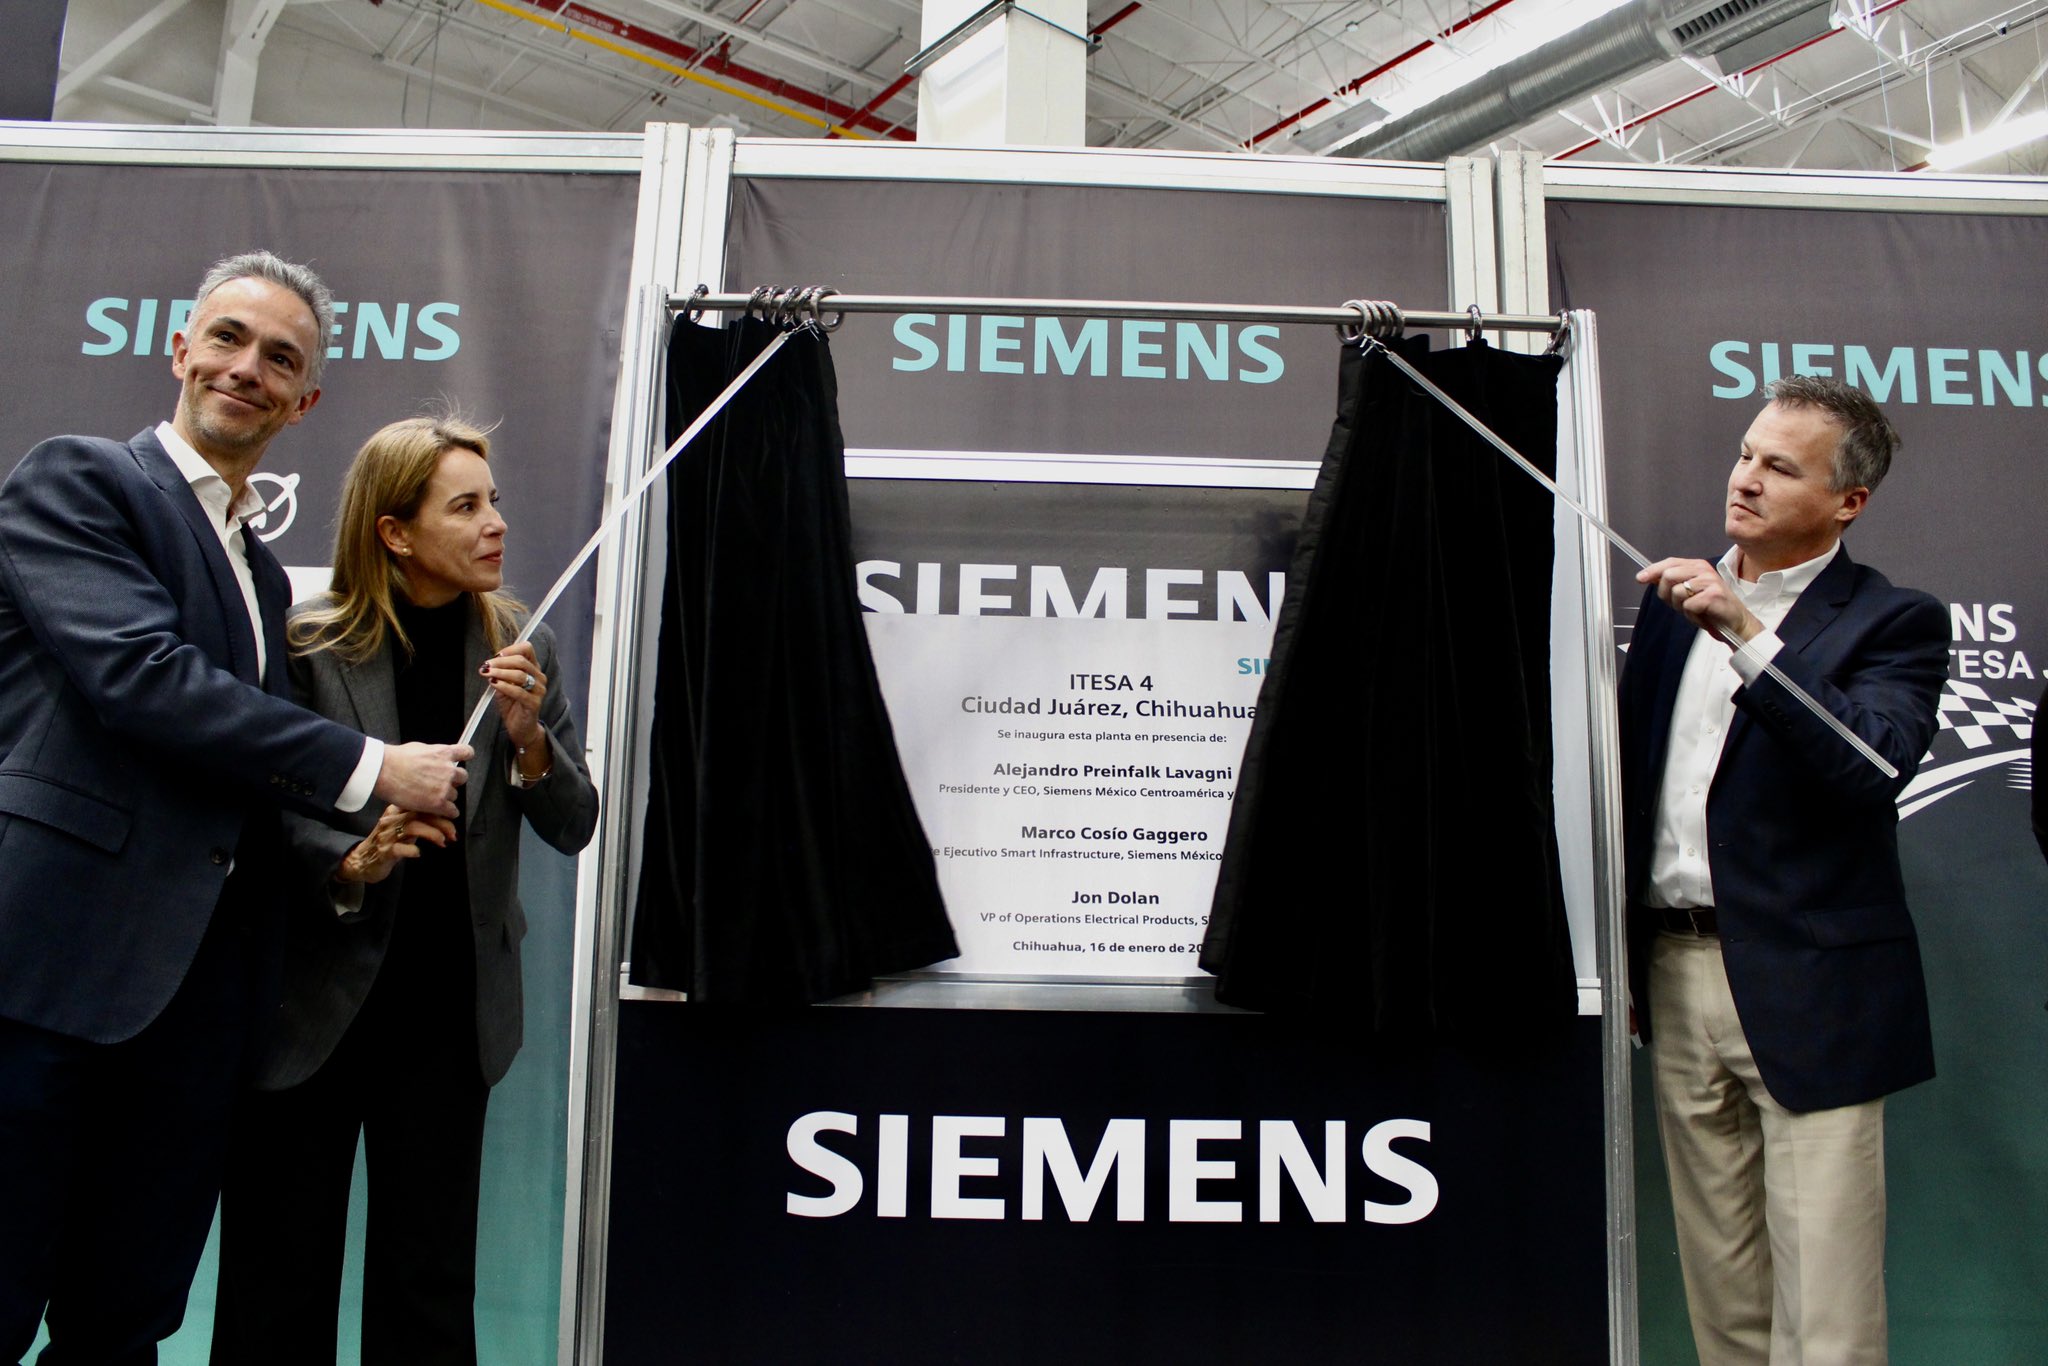 Con una inversión de 300 mdp, Siemens inaugura su planta ITESA 4 en Juárez